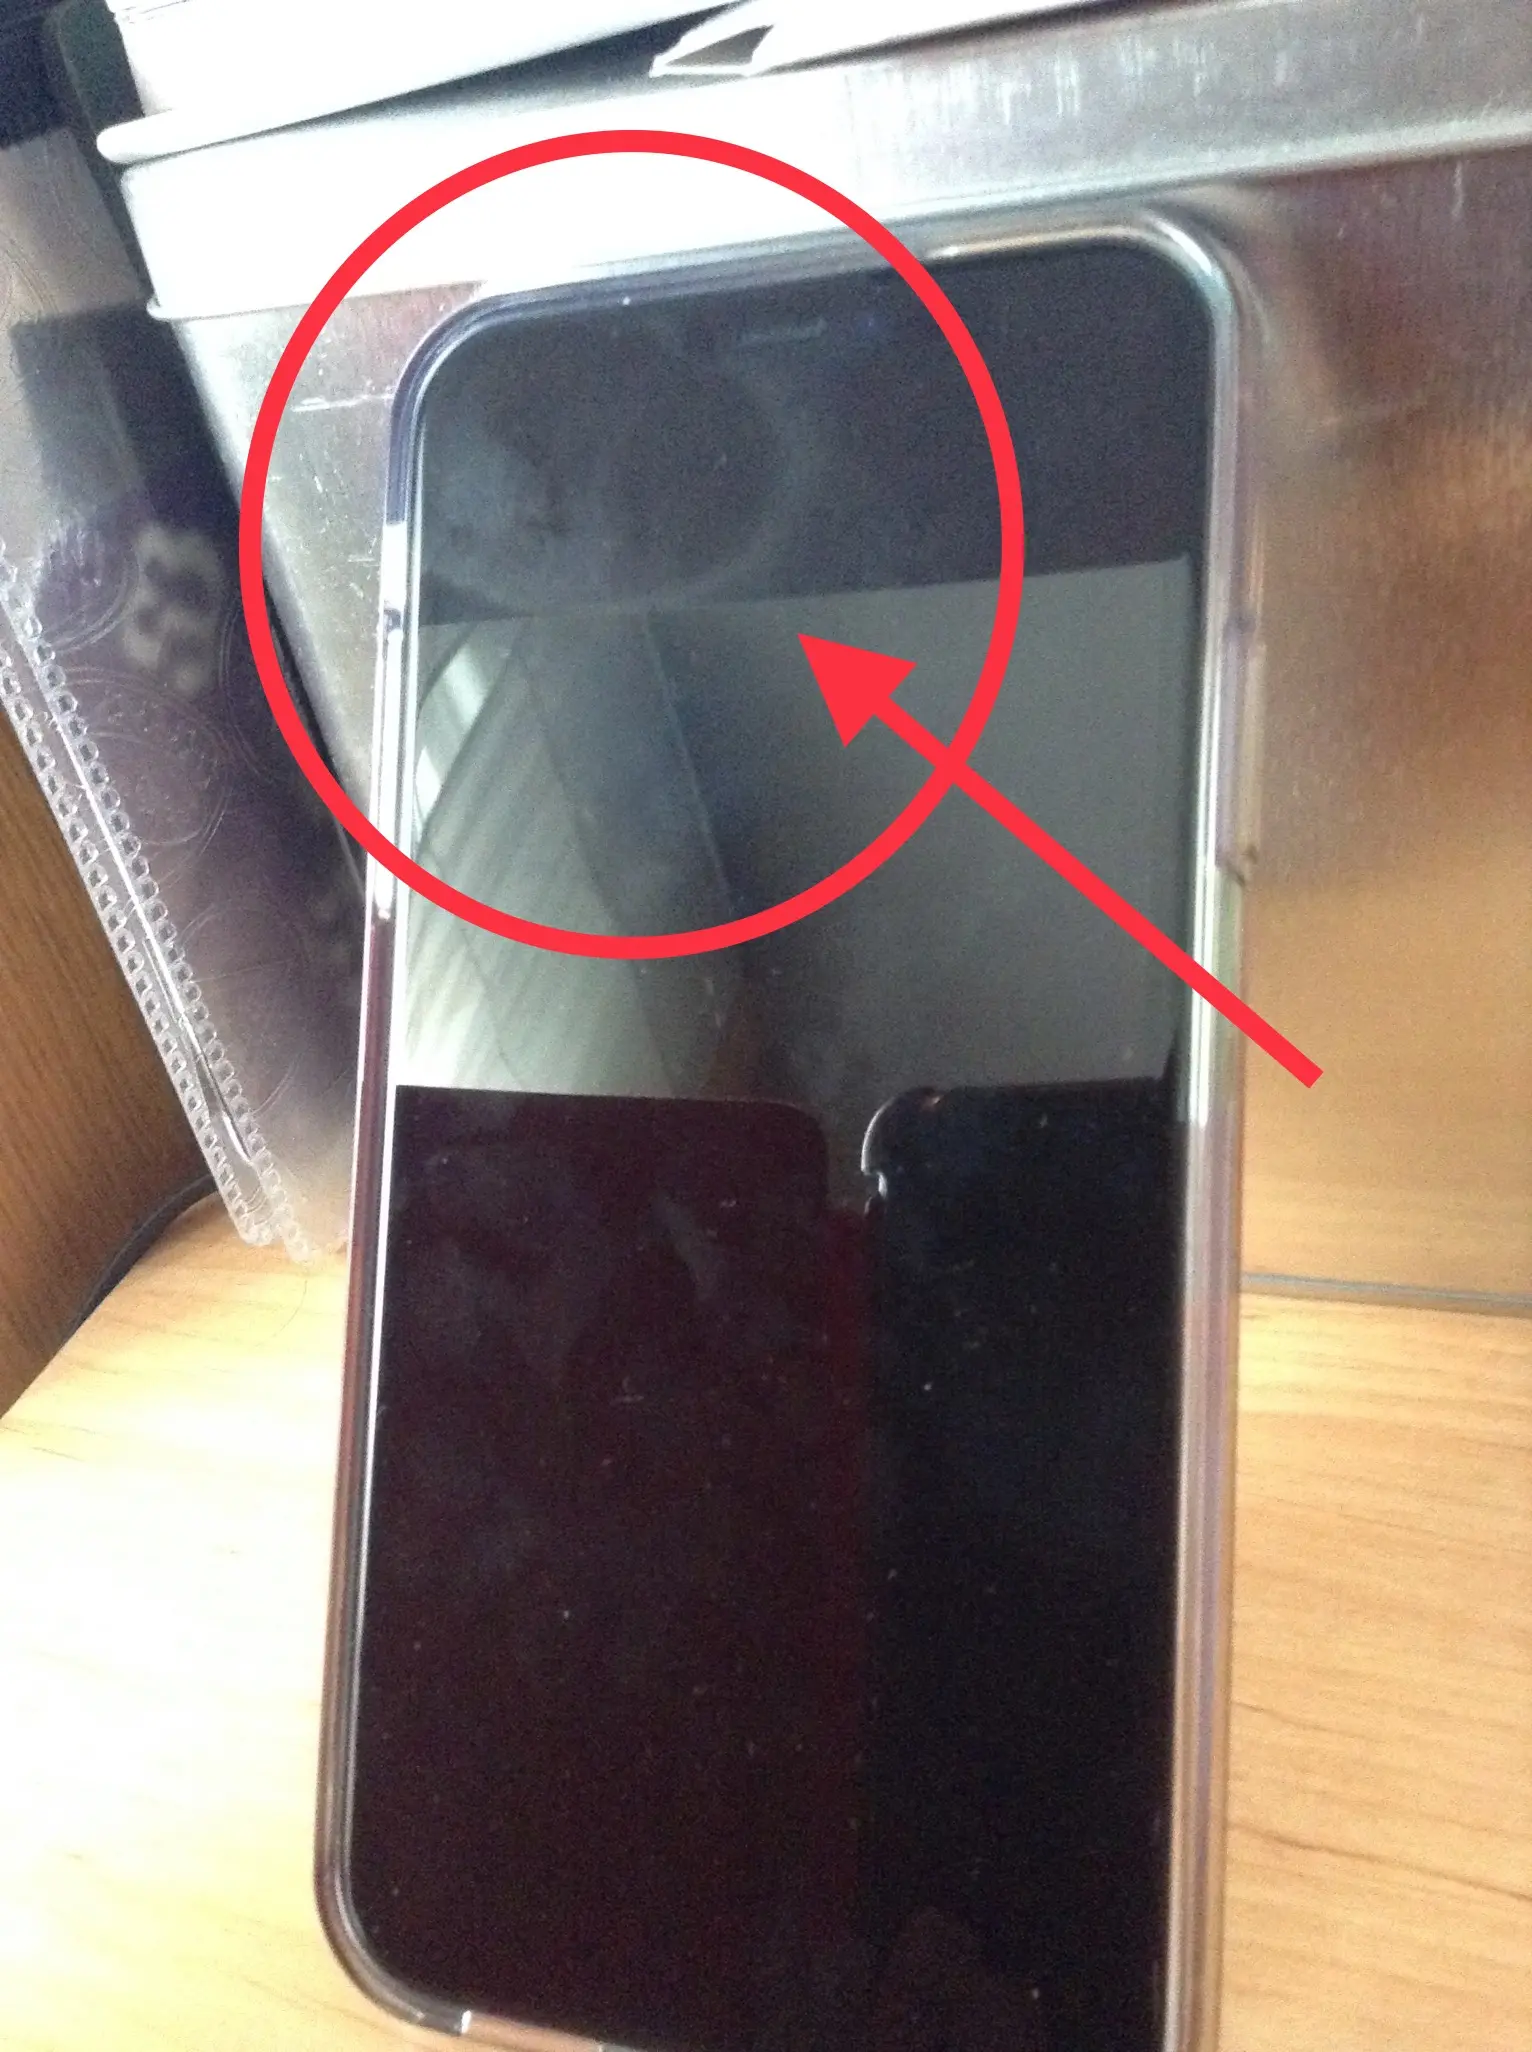 mancha en la pantalla de mi iphone - Cómo quitar manchas de la pantalla del iPhone